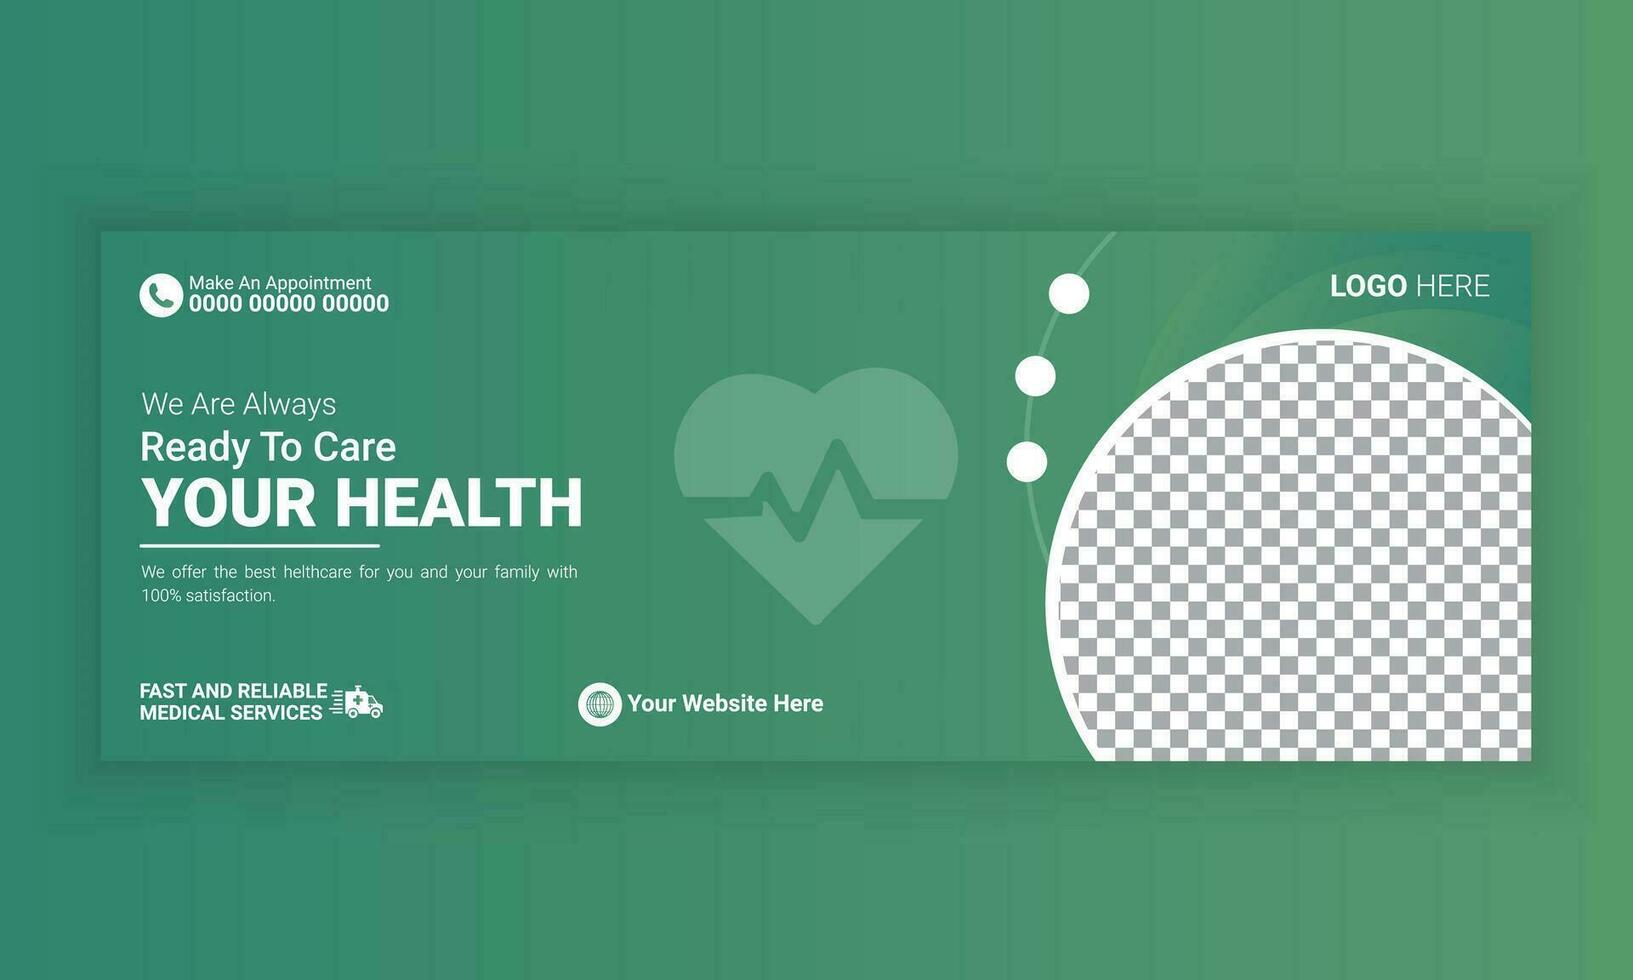 medizinisch Gesundheitswesen Sozial Medien Startseite Design. medizinisch Zeitleiste Netz Banner, Gesundheitswesen Netz Startseite Banner. vektor